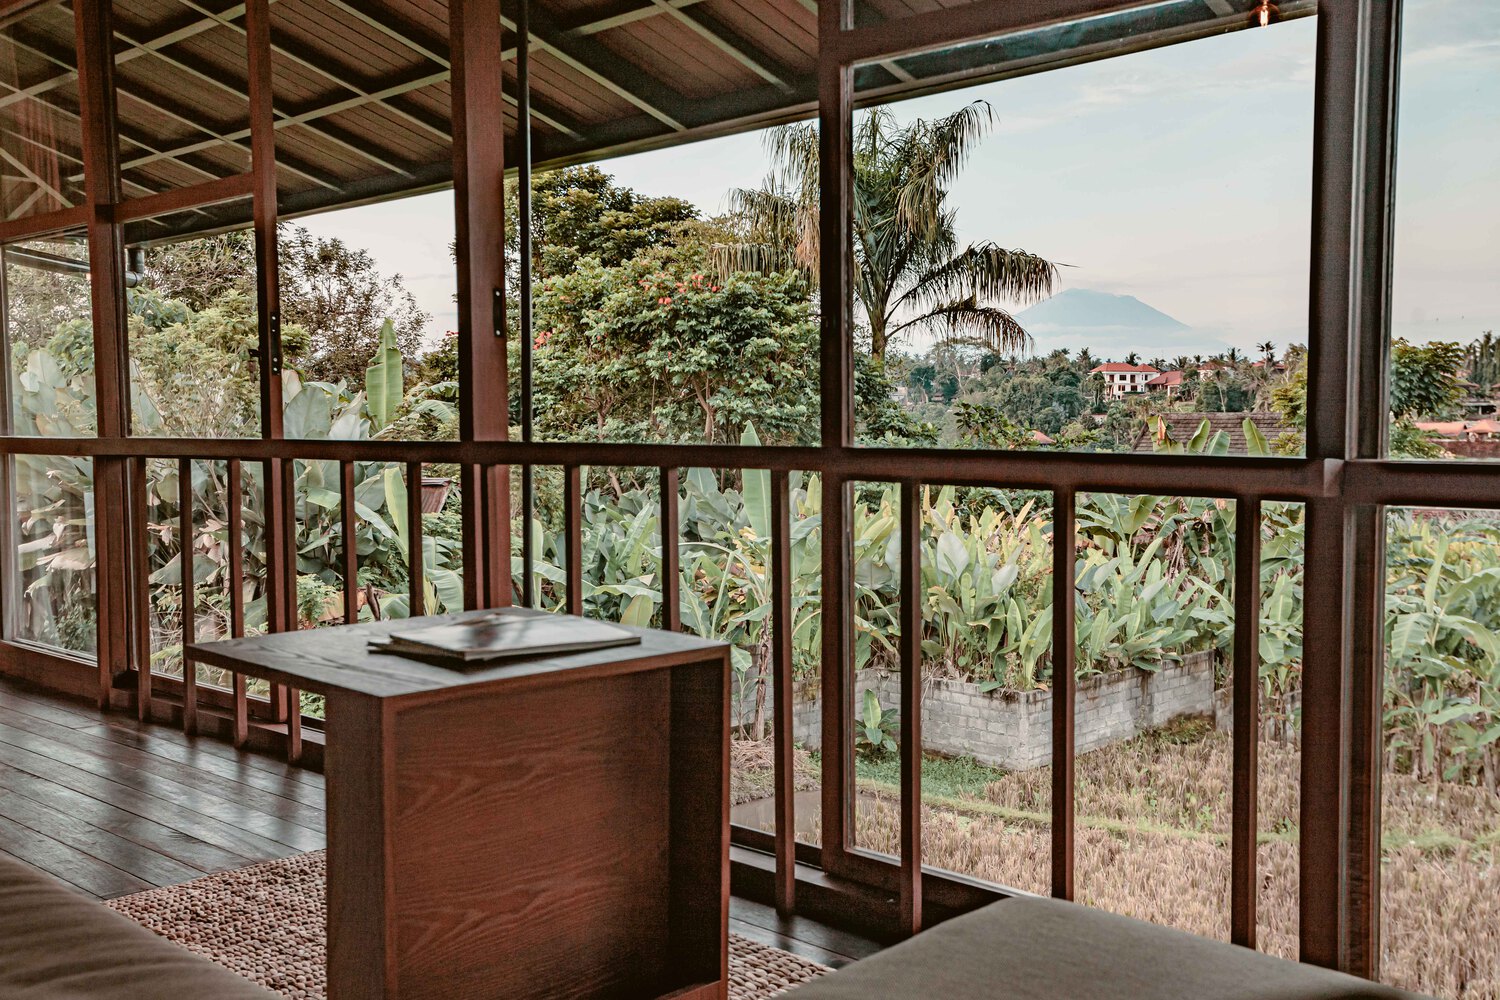 Ngôi nhà gỗ hình cái cây độc đáo ở Bali, nằm lọt thỏm giữa khu vườn nhiệt đới đầy bình yên - Ảnh 9.